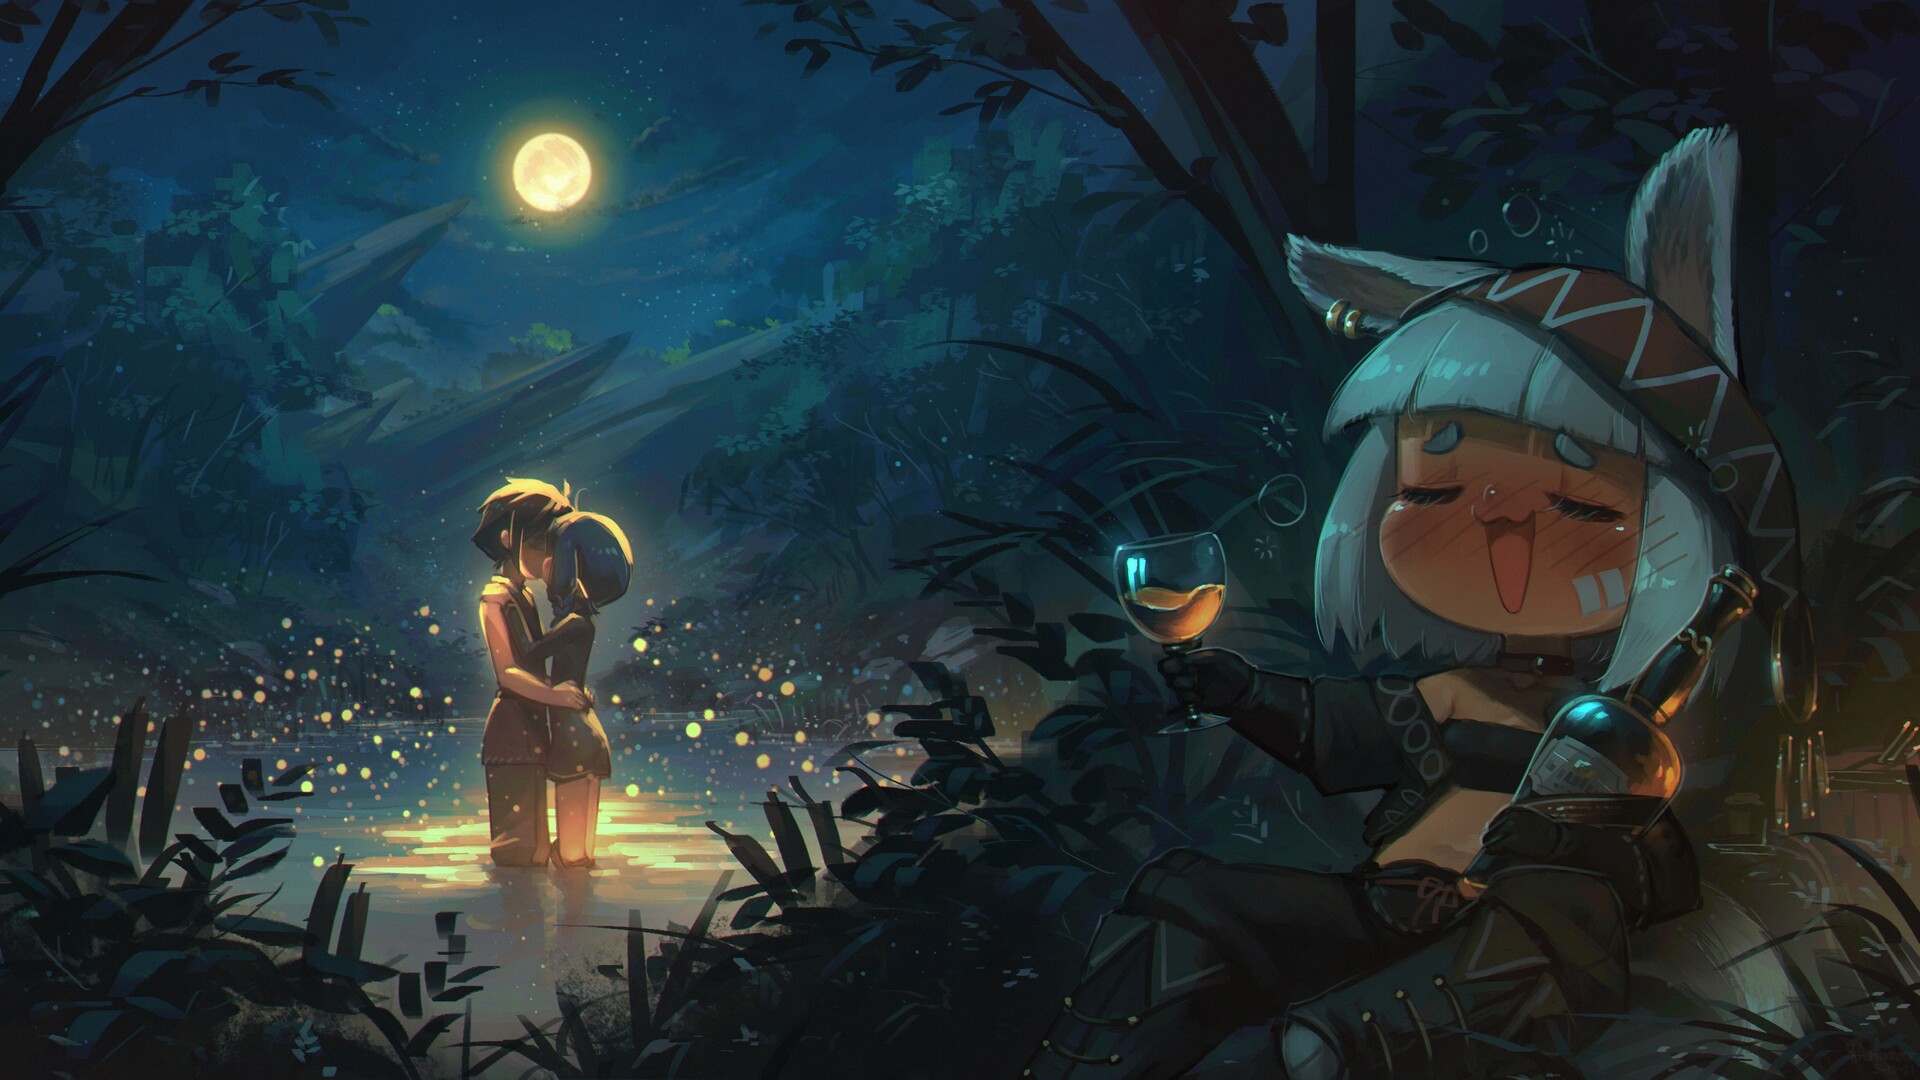 Anime 1920x1080 Porforever digital art fantasy art wine full moon Moon romance kissing lake forest drunk